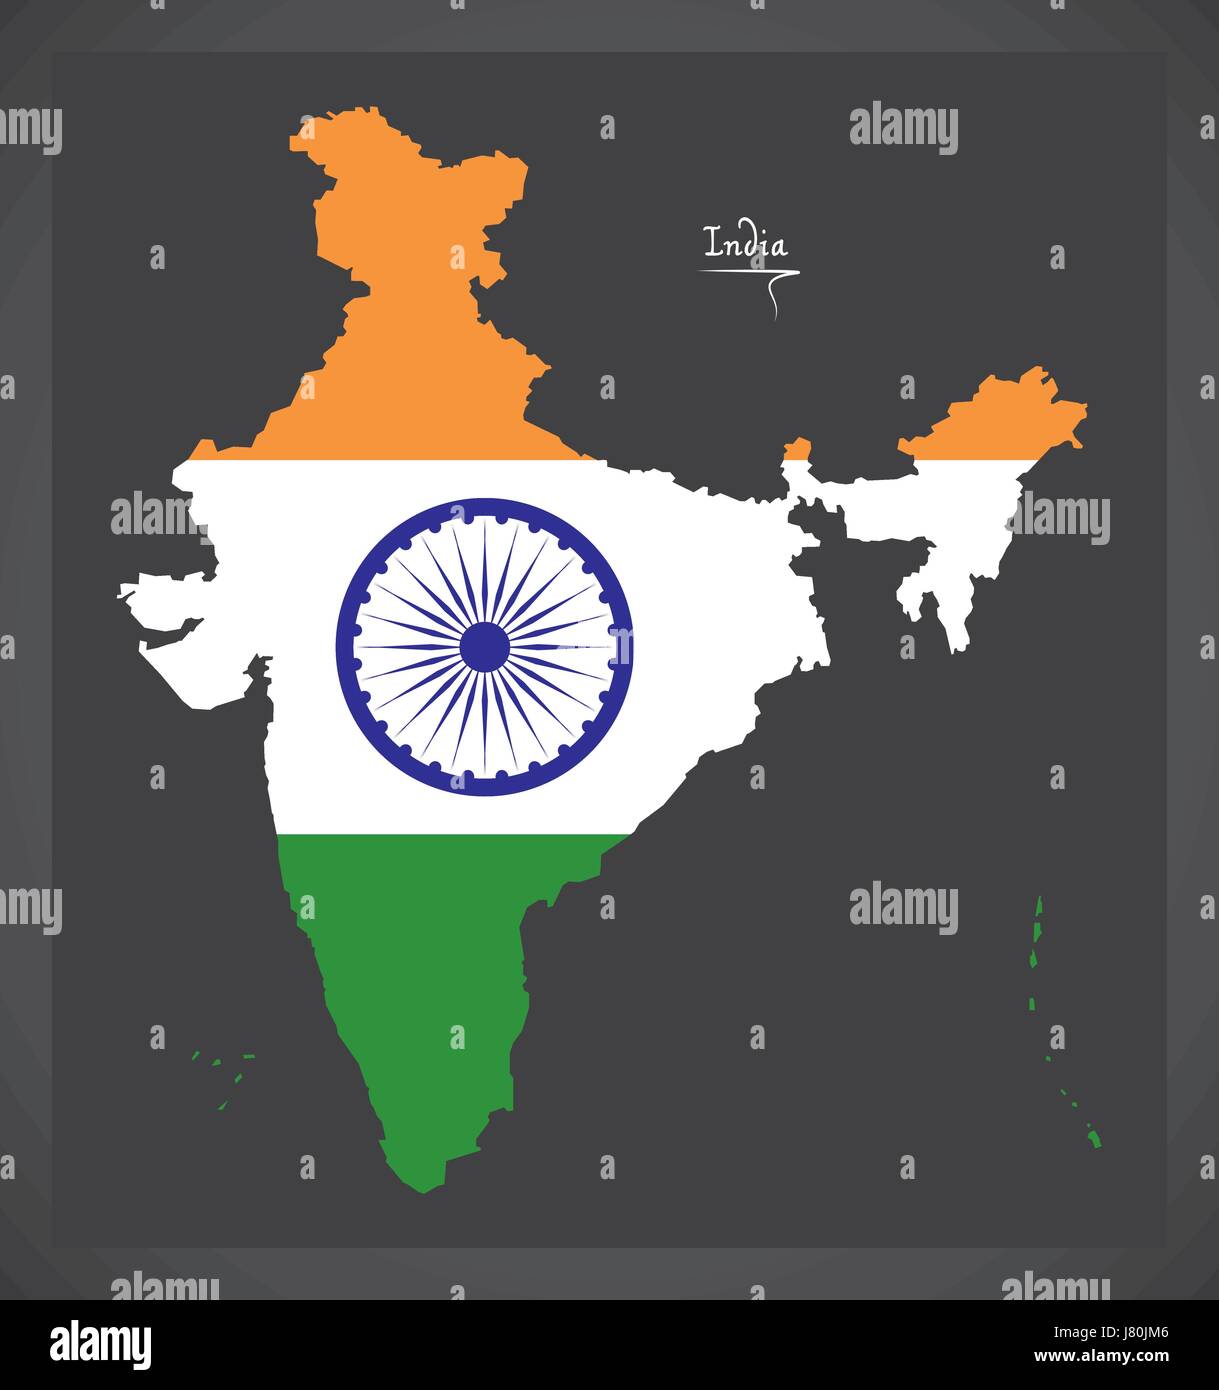 Carte de l'Inde avec drapeau national indien illustration Illustration de Vecteur